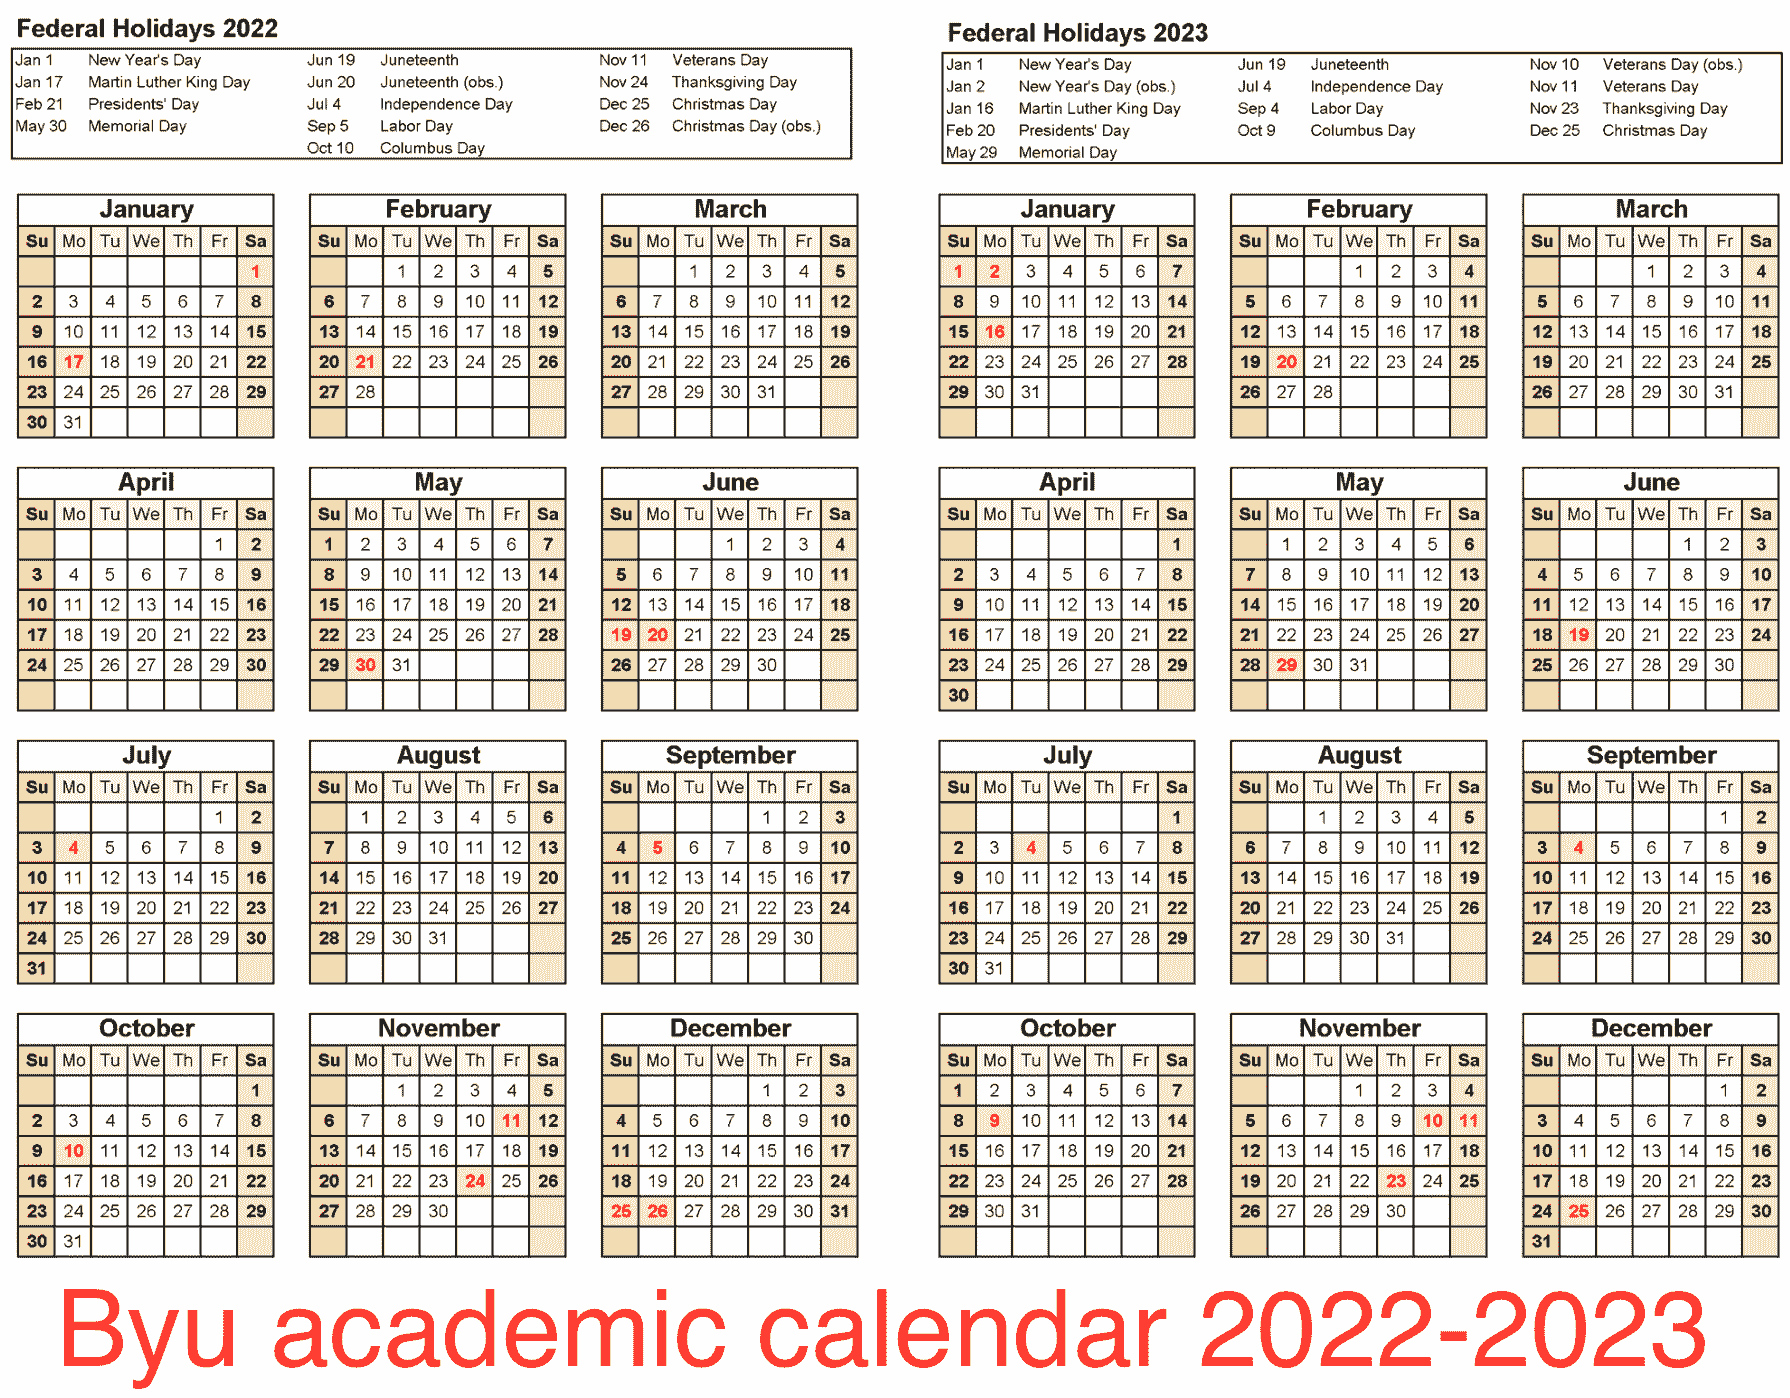 byu-academic-calendar-2022-byu-calendar-2023